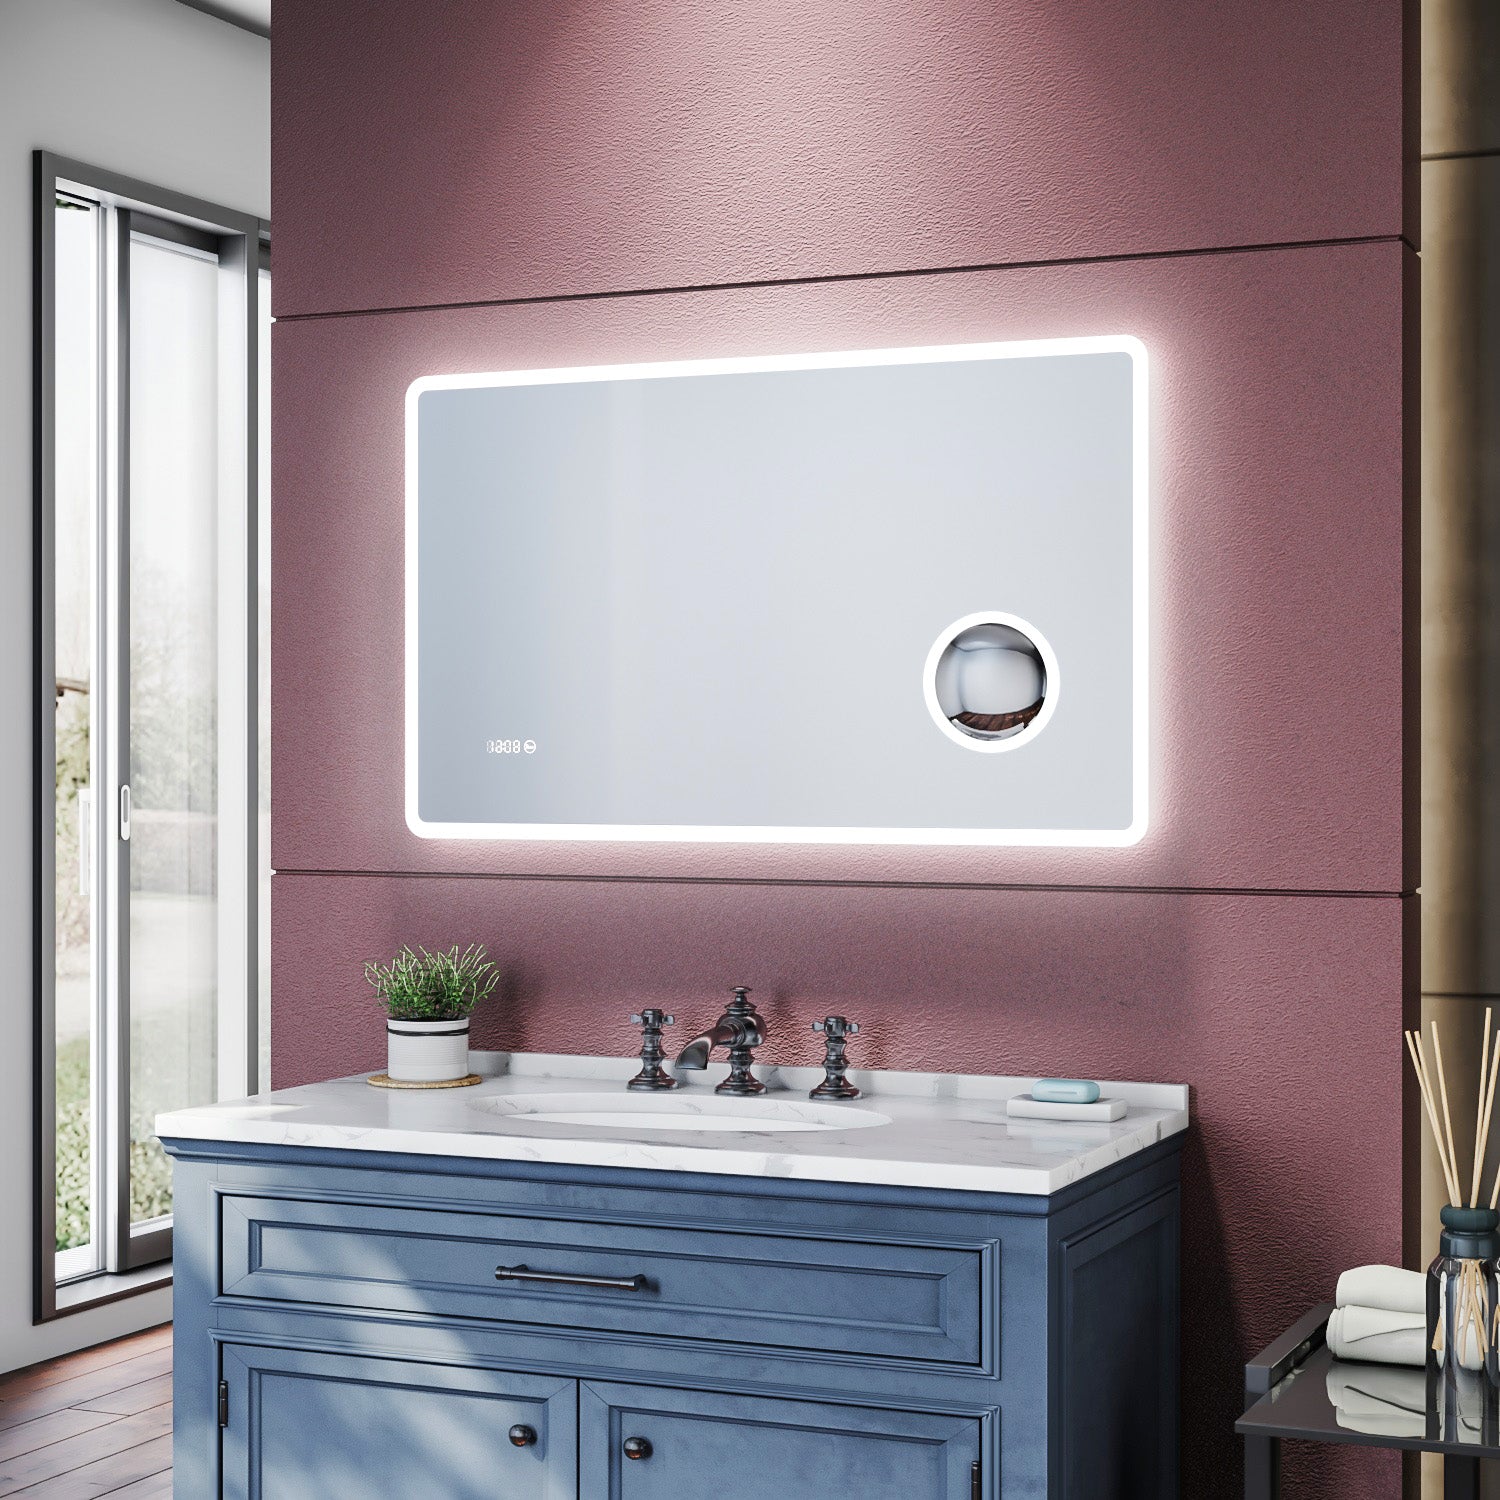 Miroir de salle de bains 1000 x 600 x 40mm - Miroirs cosmétiques muraux - Miroir avec led illumination - Miroir grossissant 3X - Blanc froid - Avec prise rasoir - Anti-poussière et antibuée, SIRHONA - SIRHONA